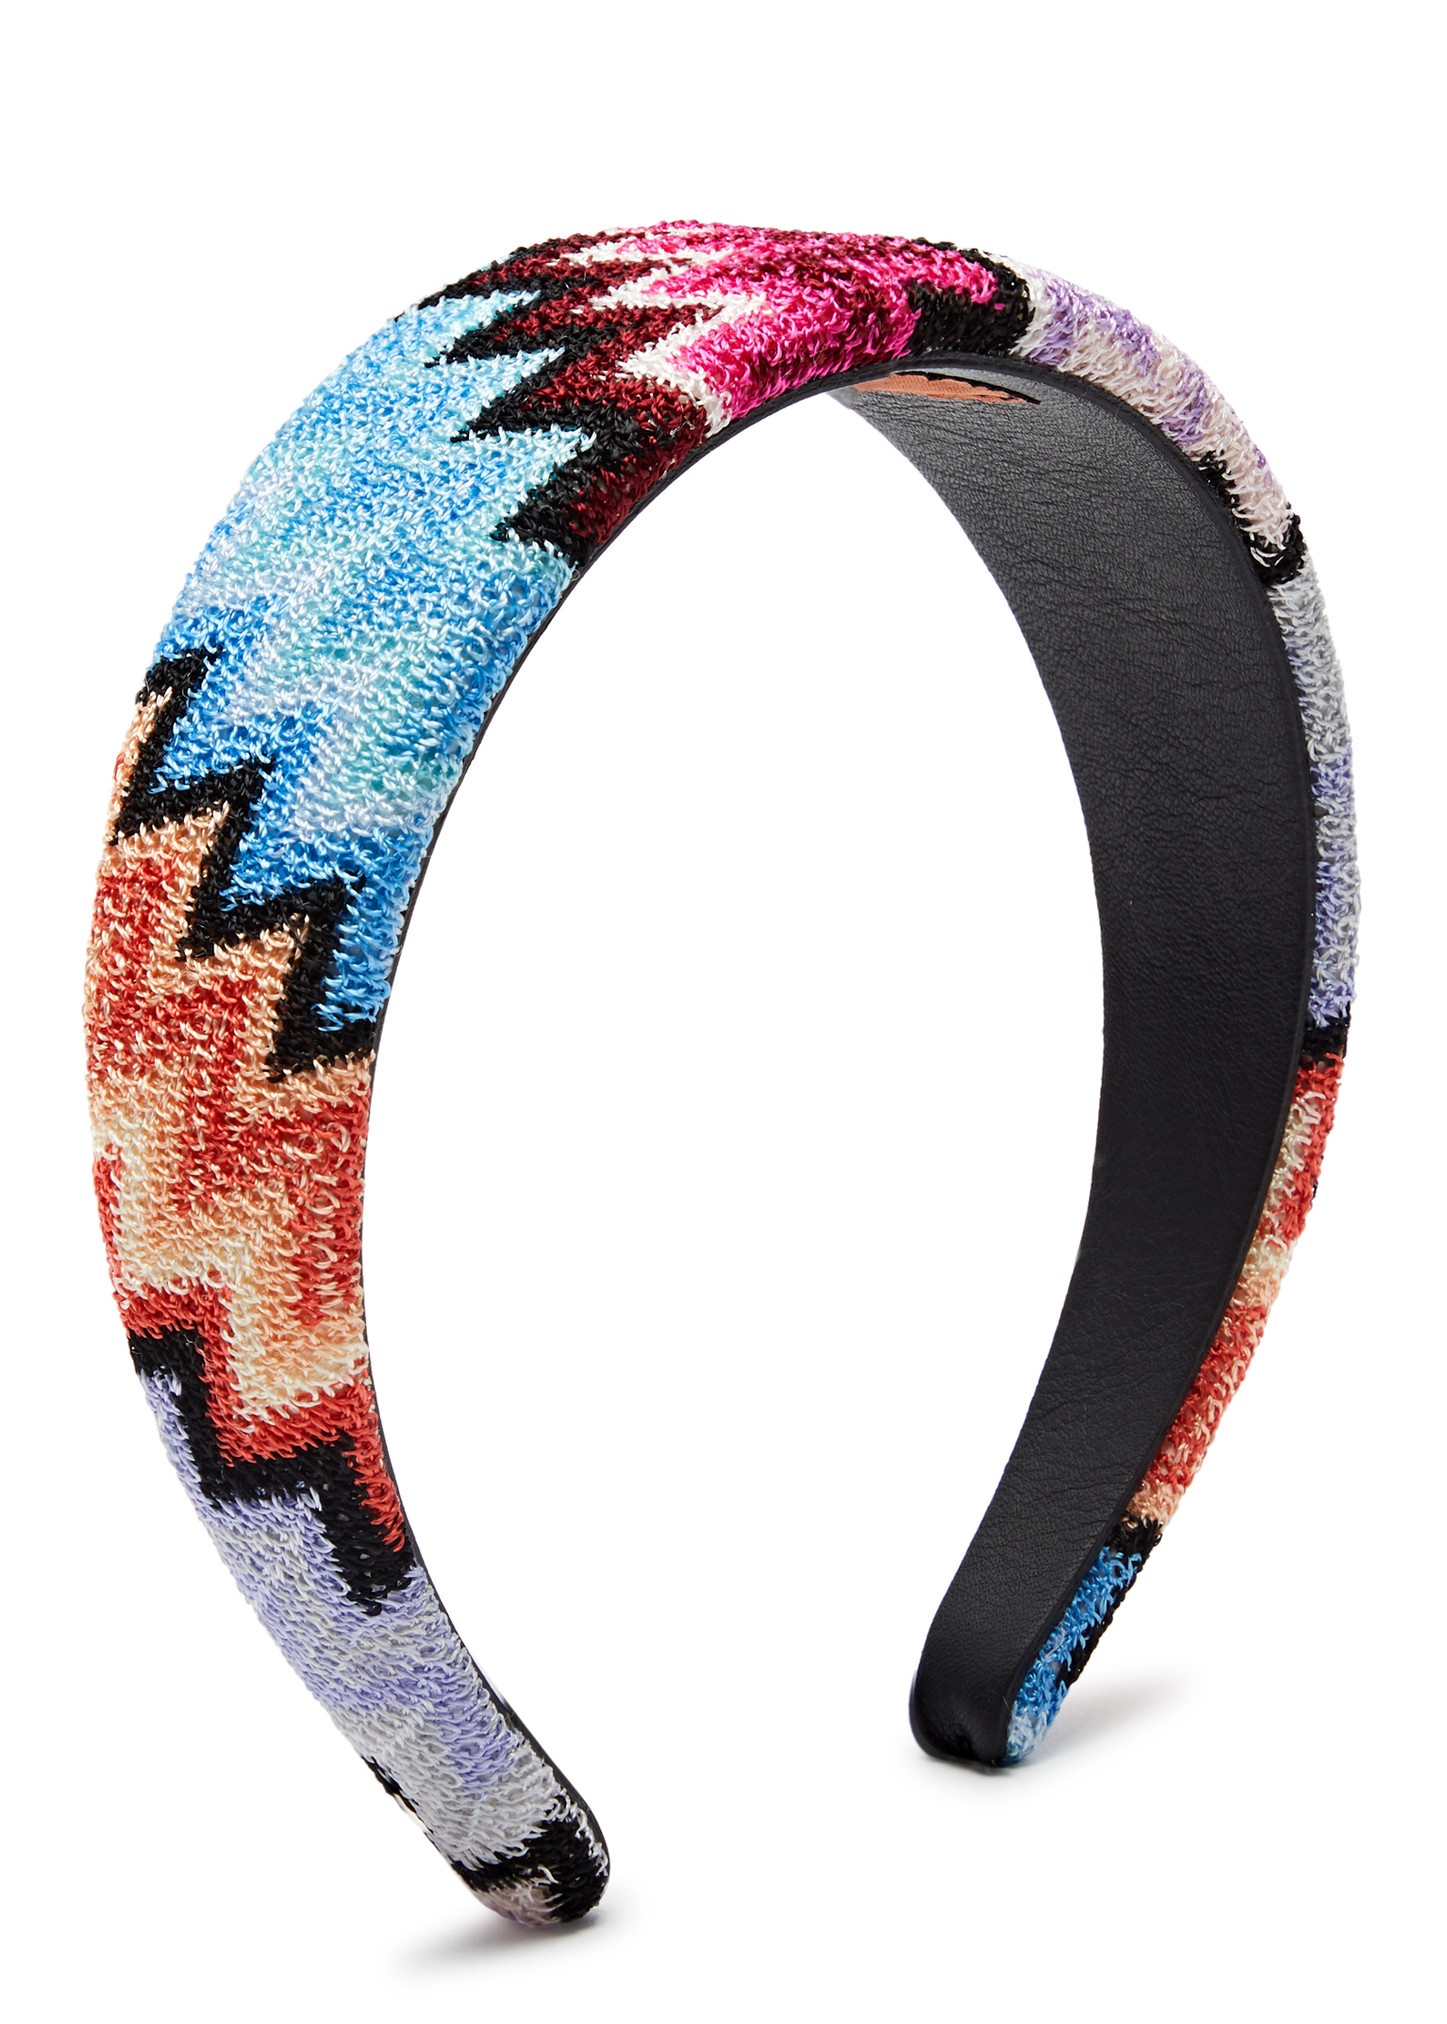 Zigzag-intarsia knitted headband - 1